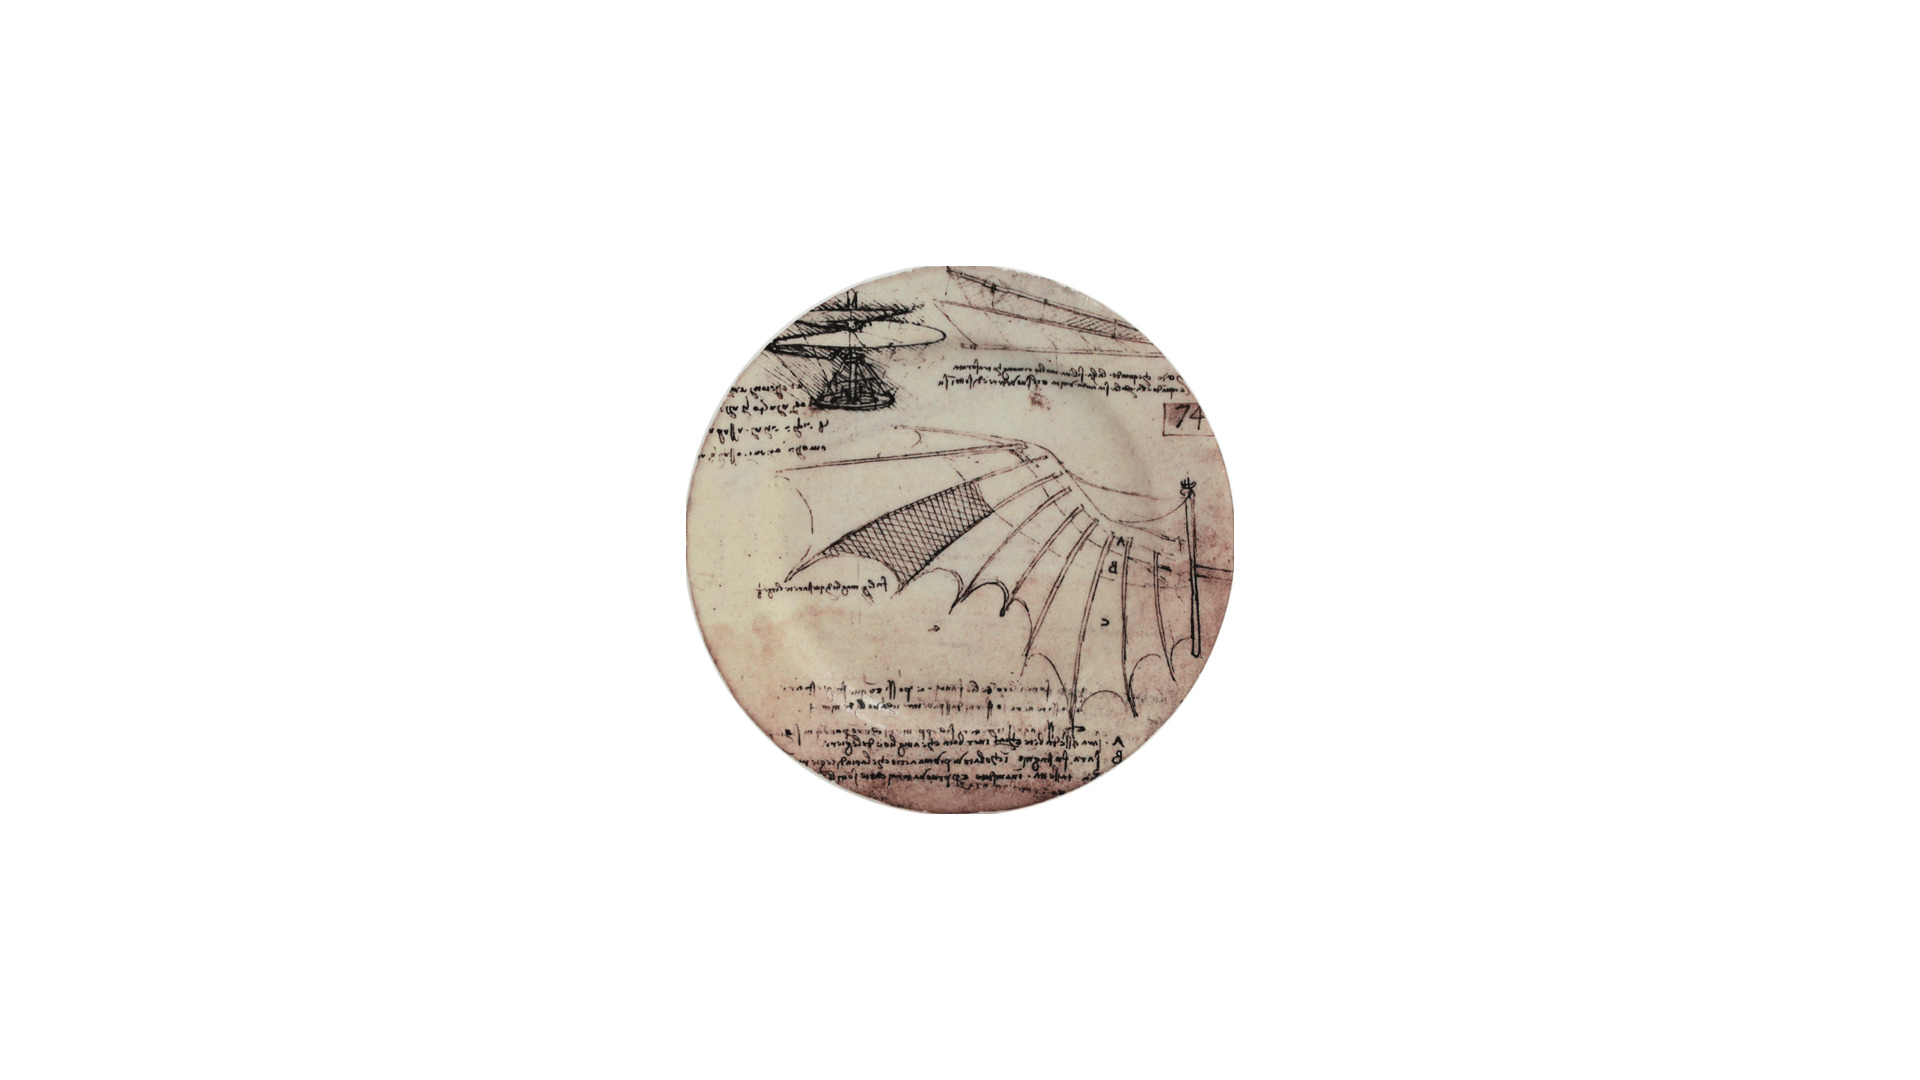 Набор подставок для кружек Gien Механизмы Леонардо Да Винчи 12,8 см, фаянс, 4 шт